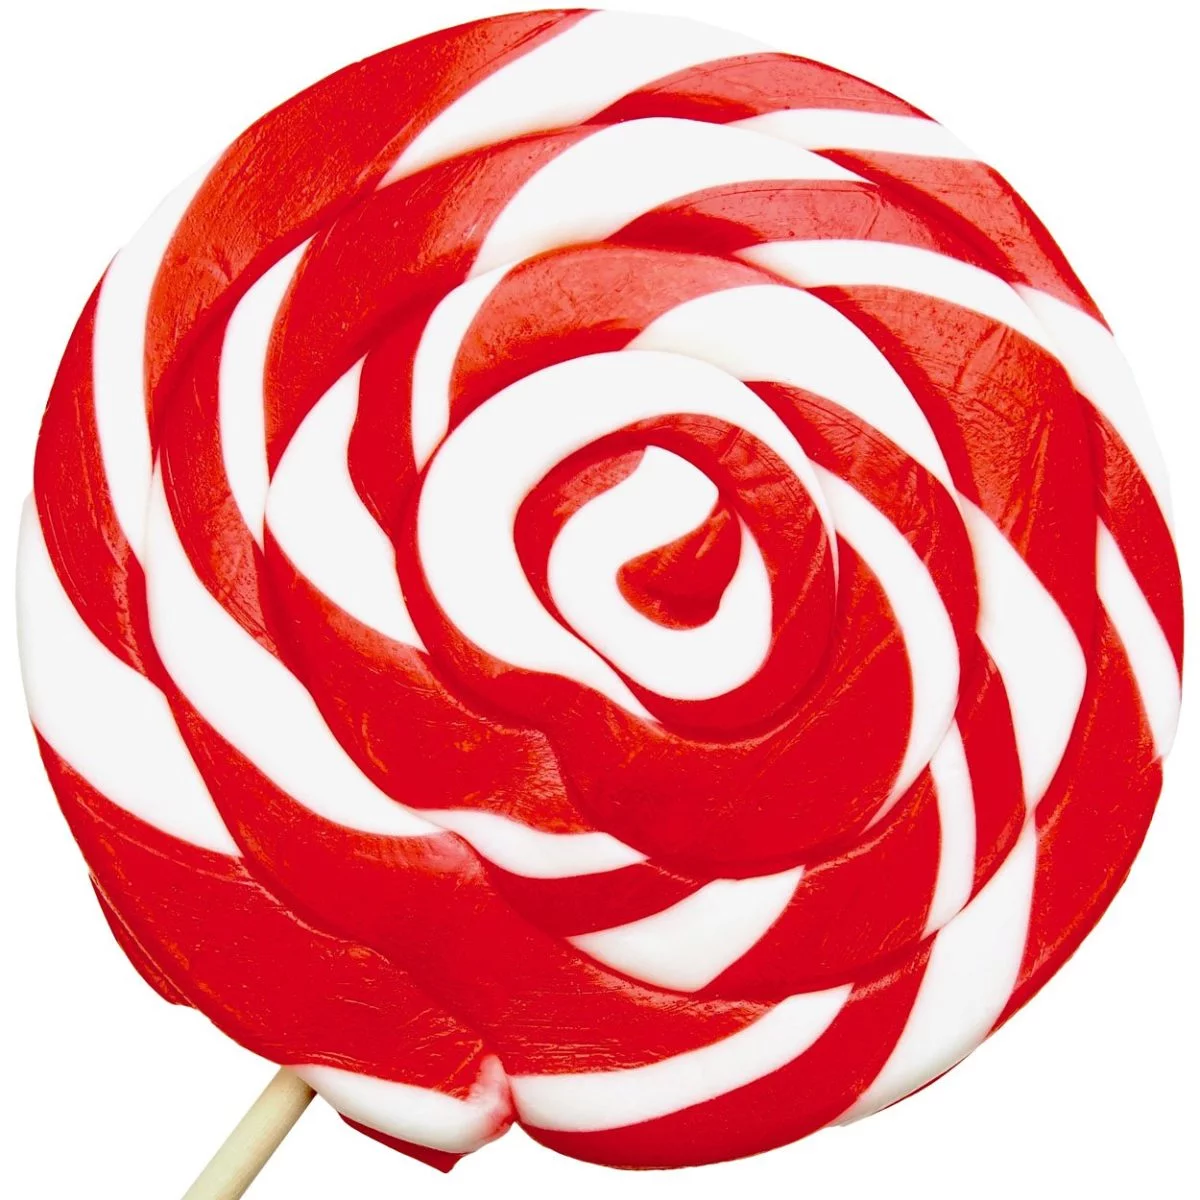 Riesiger Spiral-Lolli Rot/Weiß (500g) 1